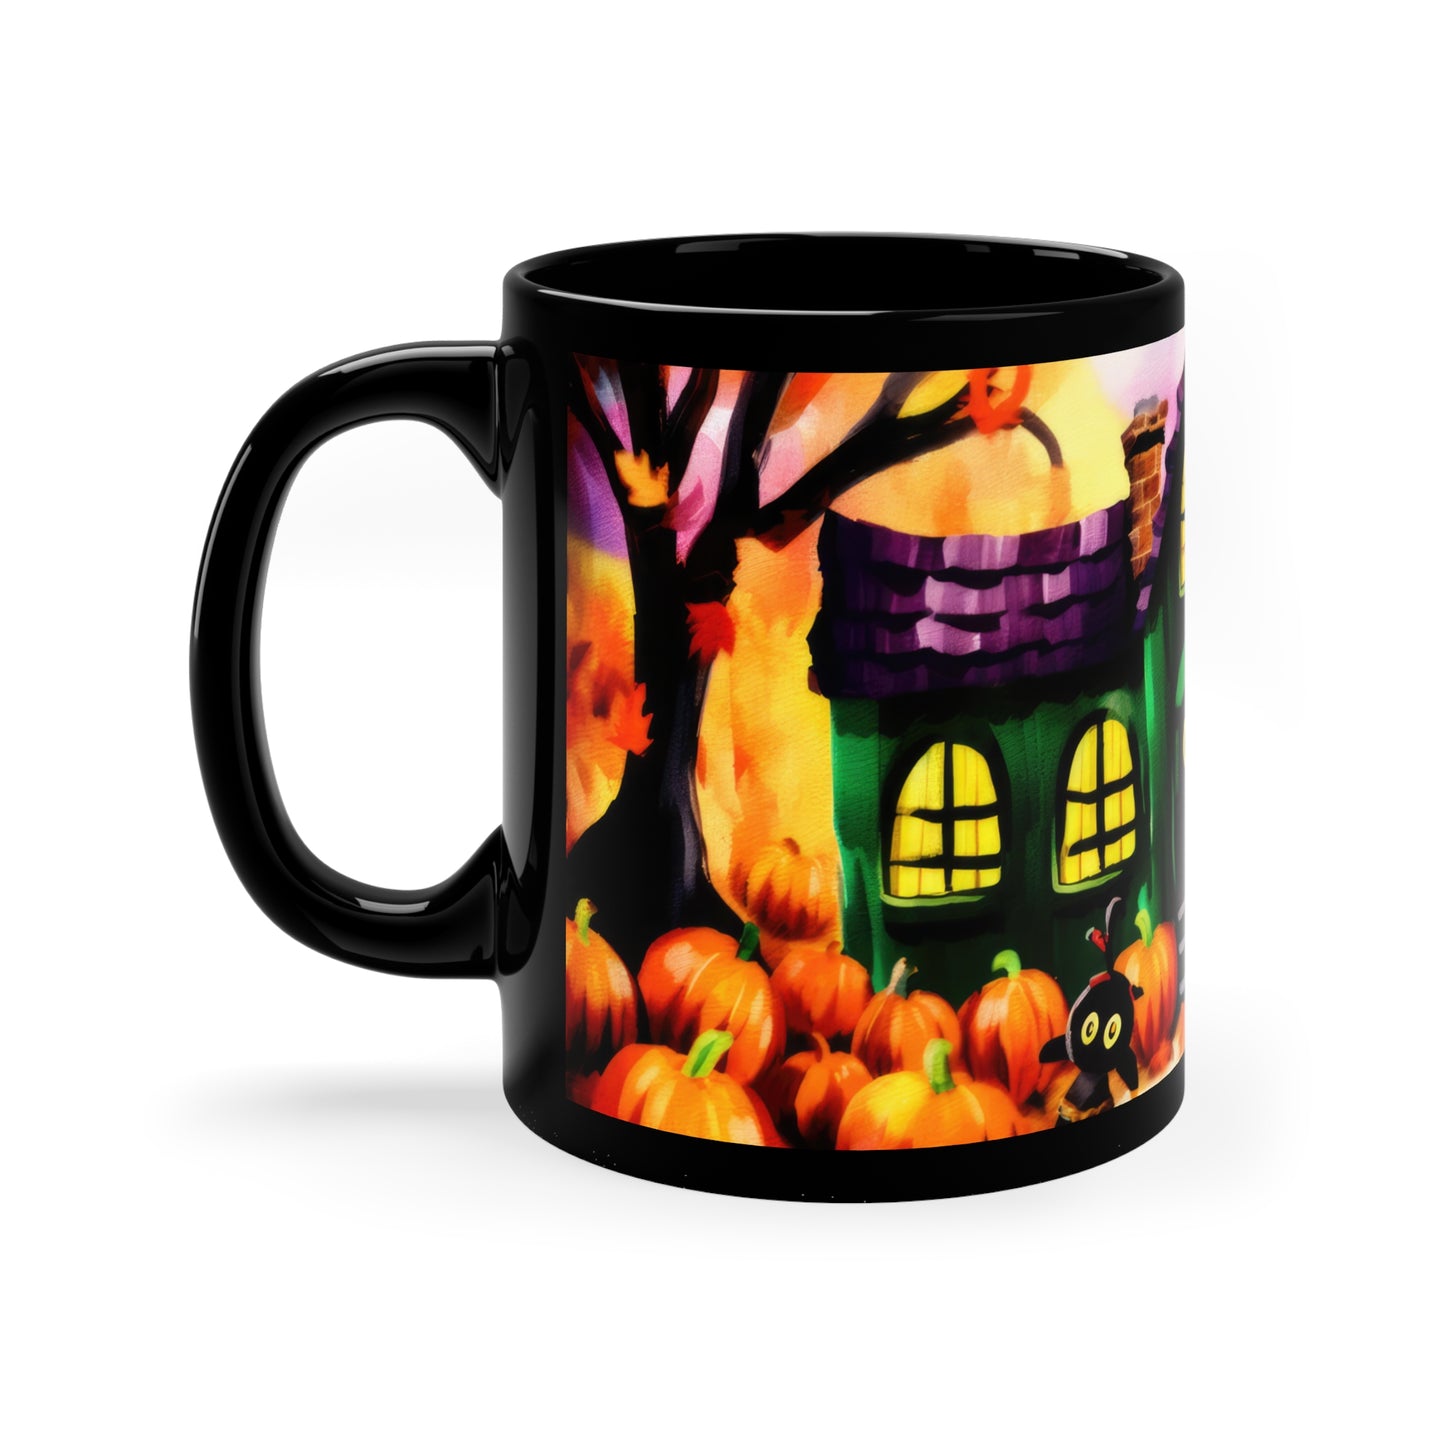 Fall Time School House With Lights On, Halloween Theme 11oz Black Mug